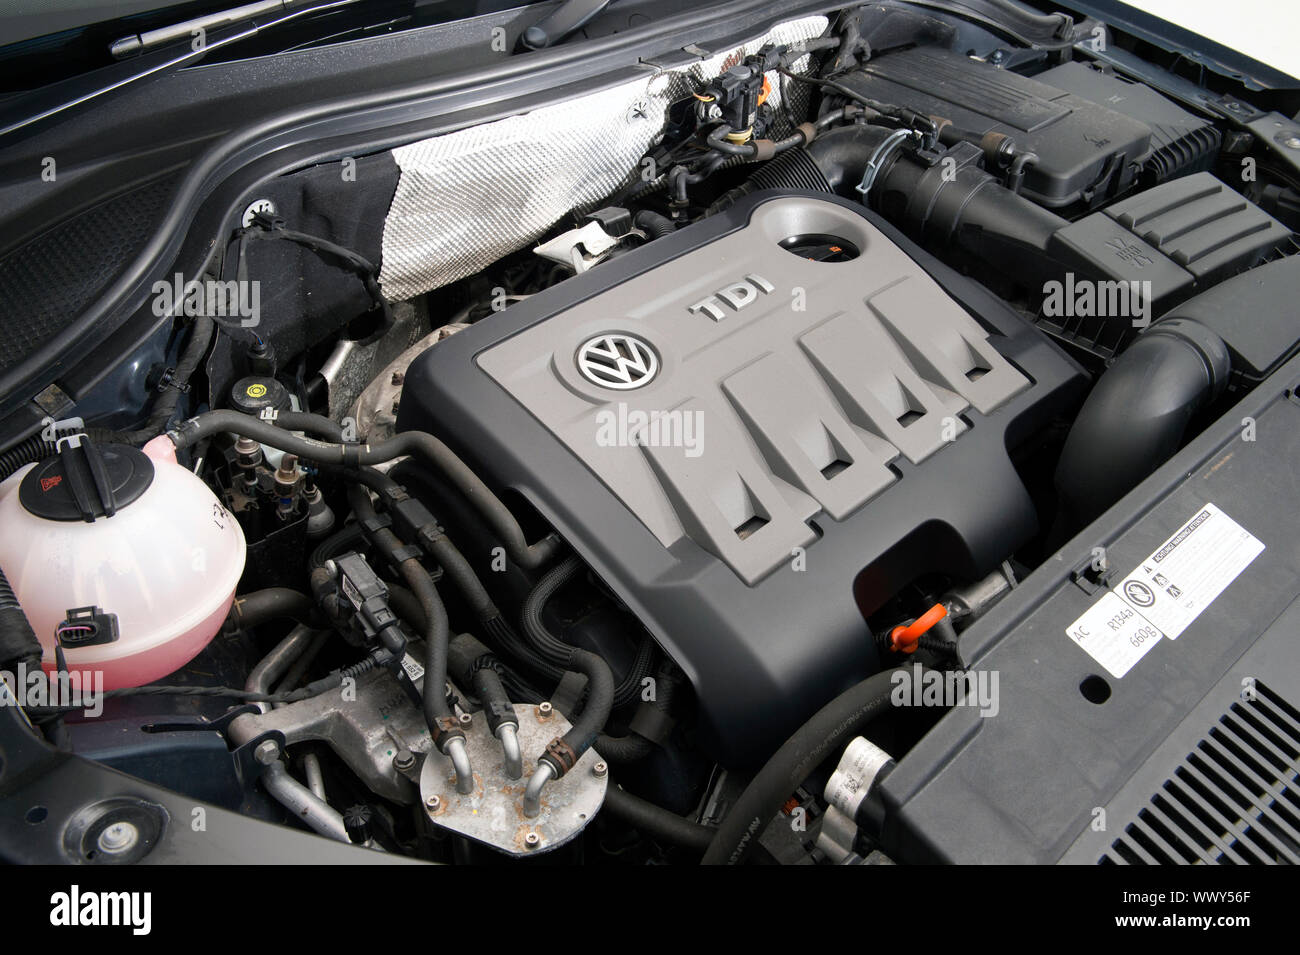 2012 Volkswagen Tiguan. Stock Photo